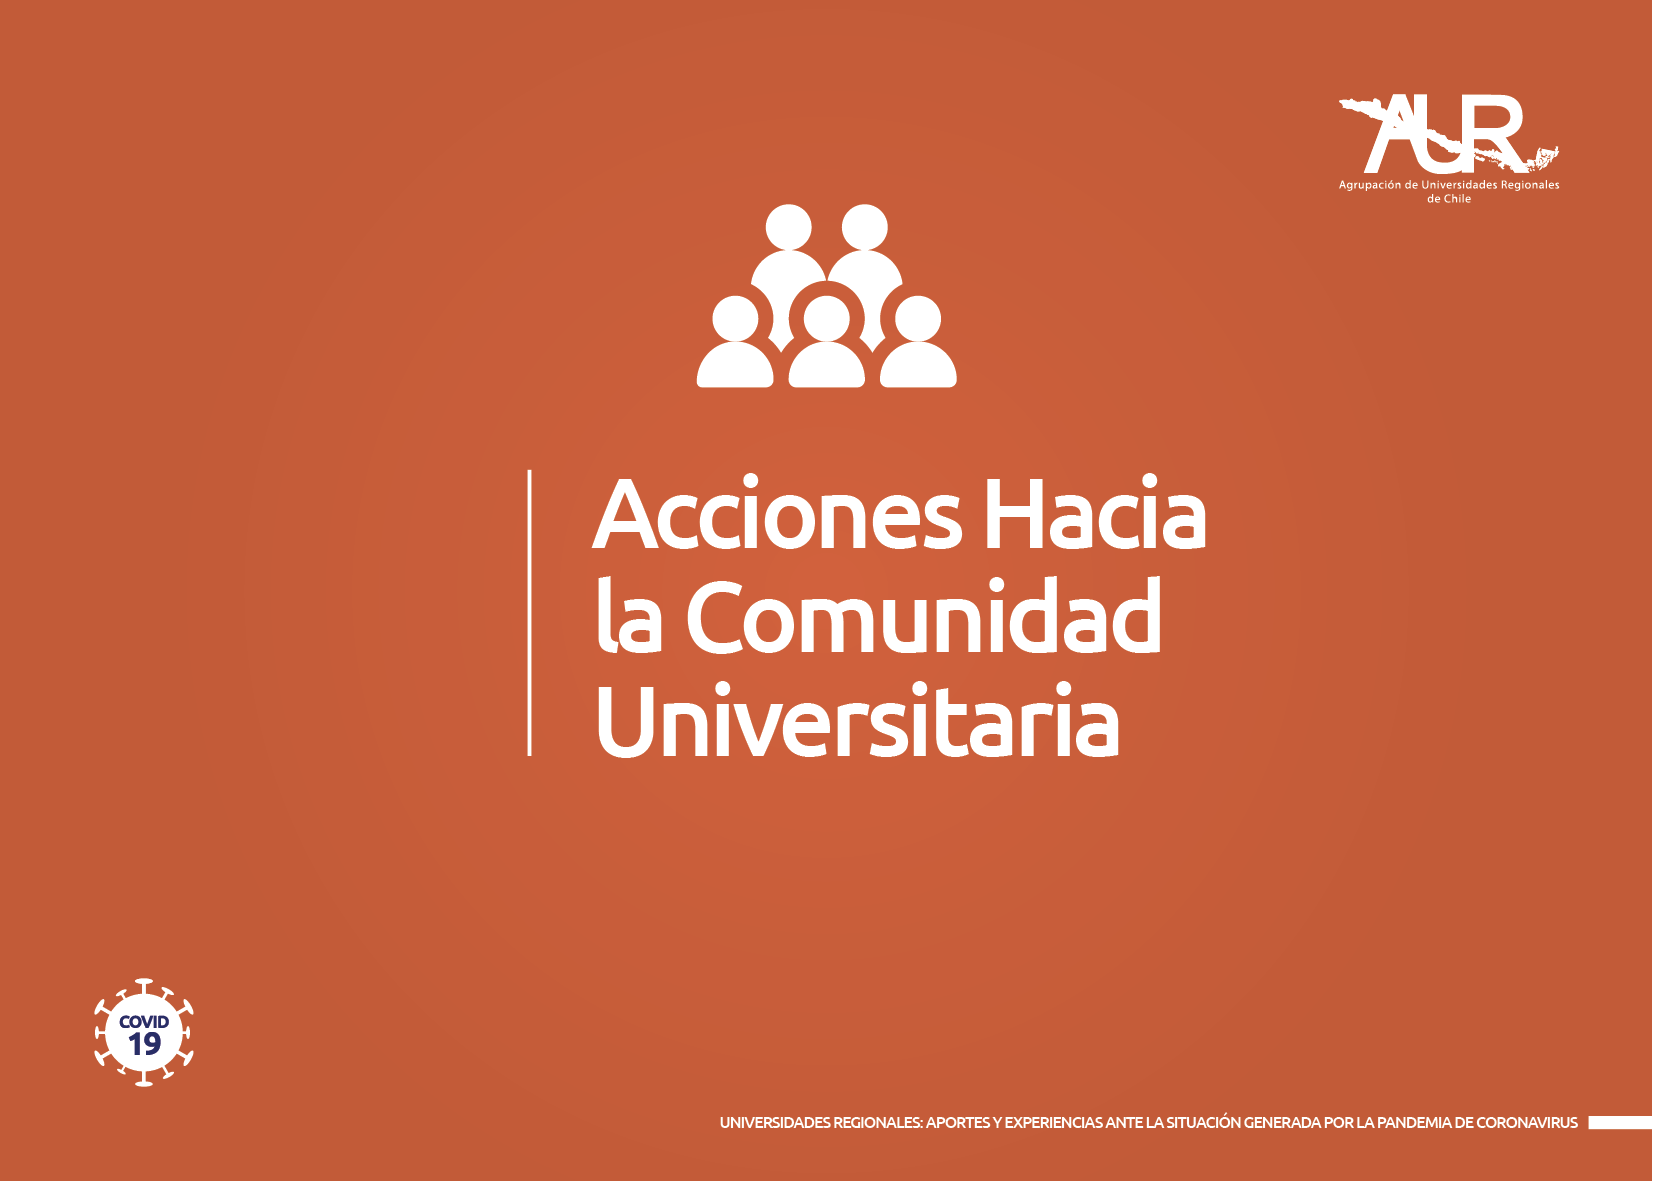 Universidades Regionales: Informe con las acciones hacia la comunidad universitaria